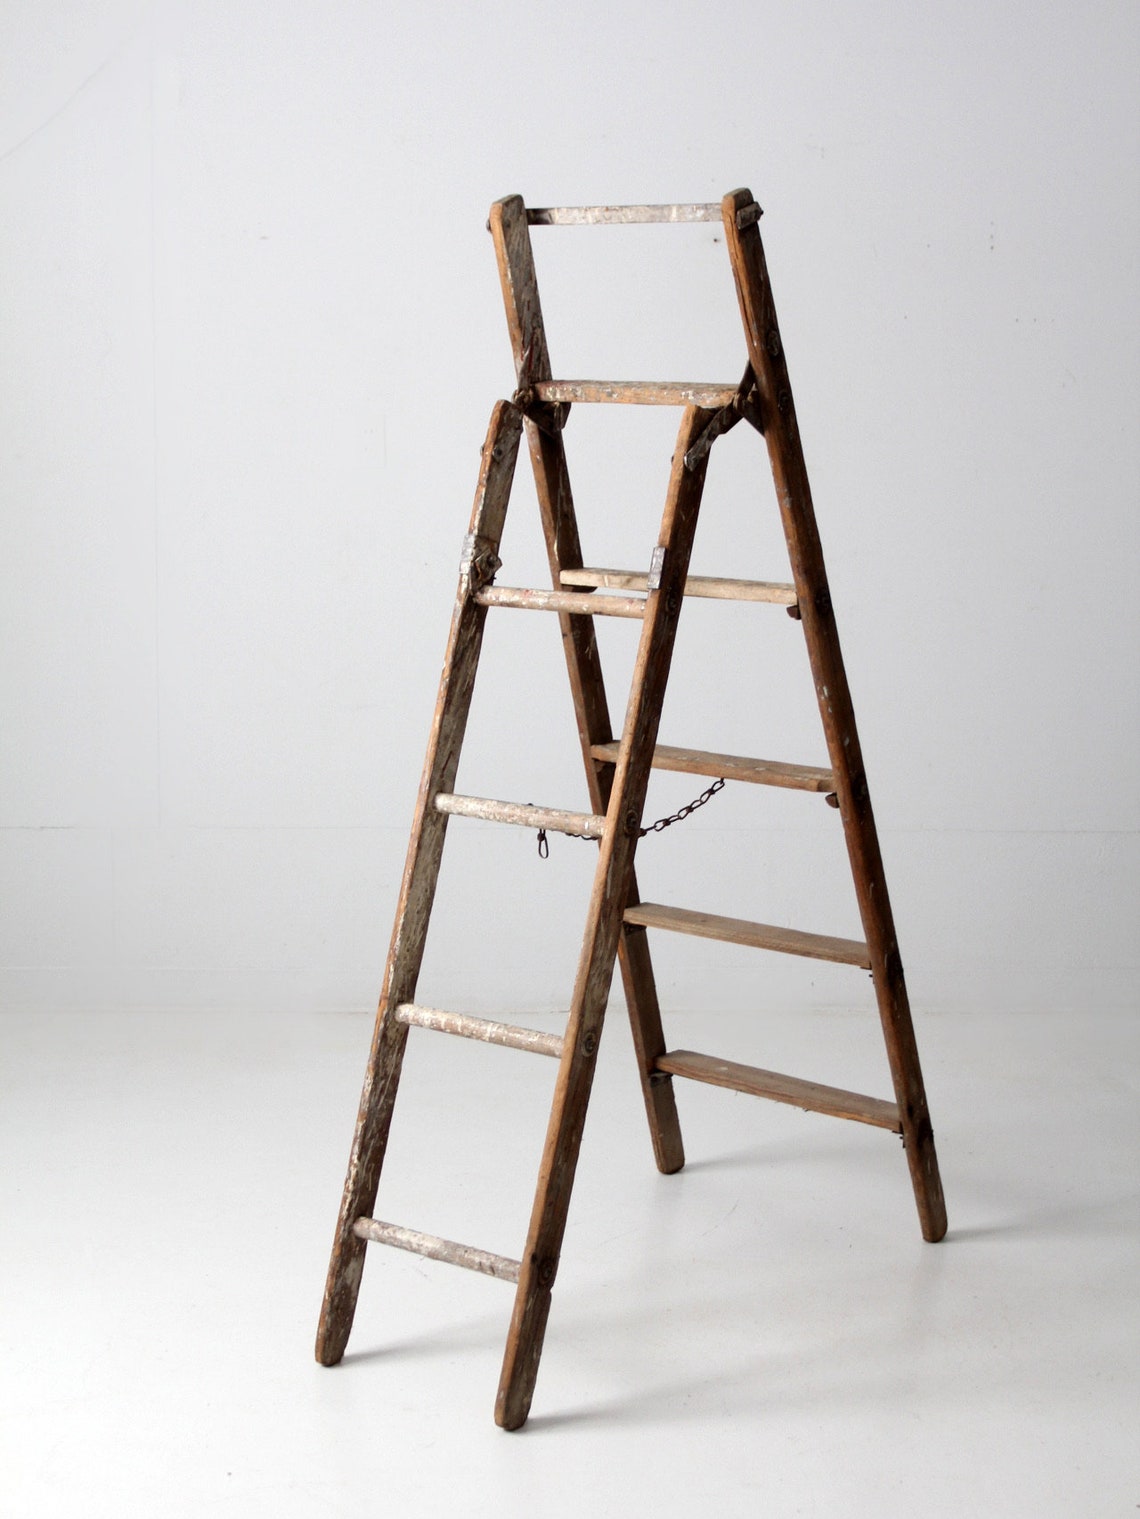 Vintage rustic a-frame folding ladder | Etsy